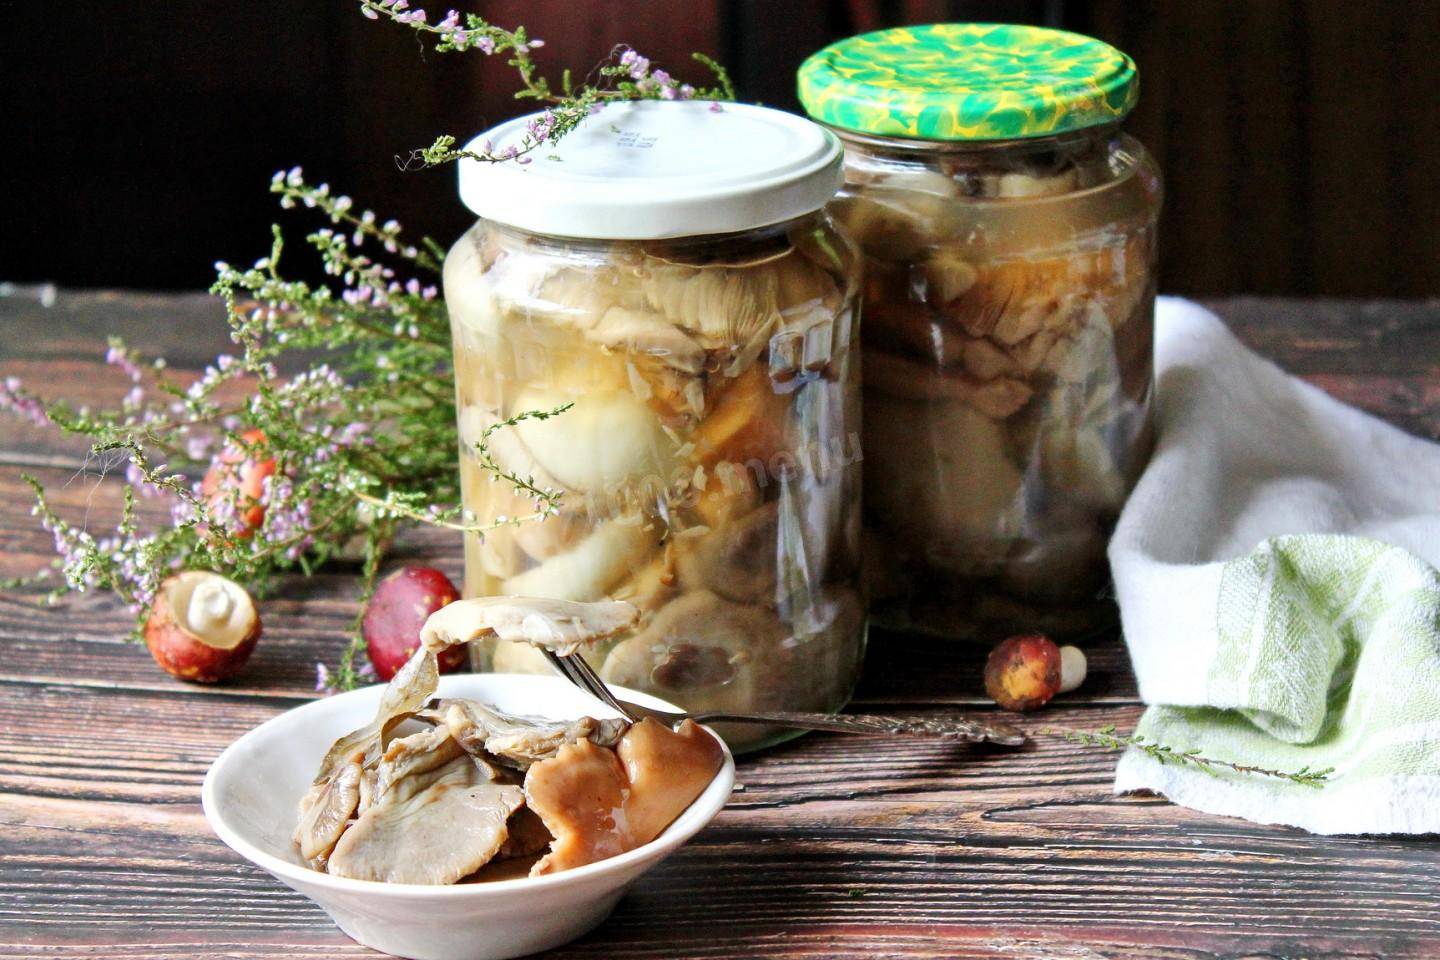 Как мариновать белые грибы в банках на зиму? 6 простых рецептов приготовления в домашних условиях